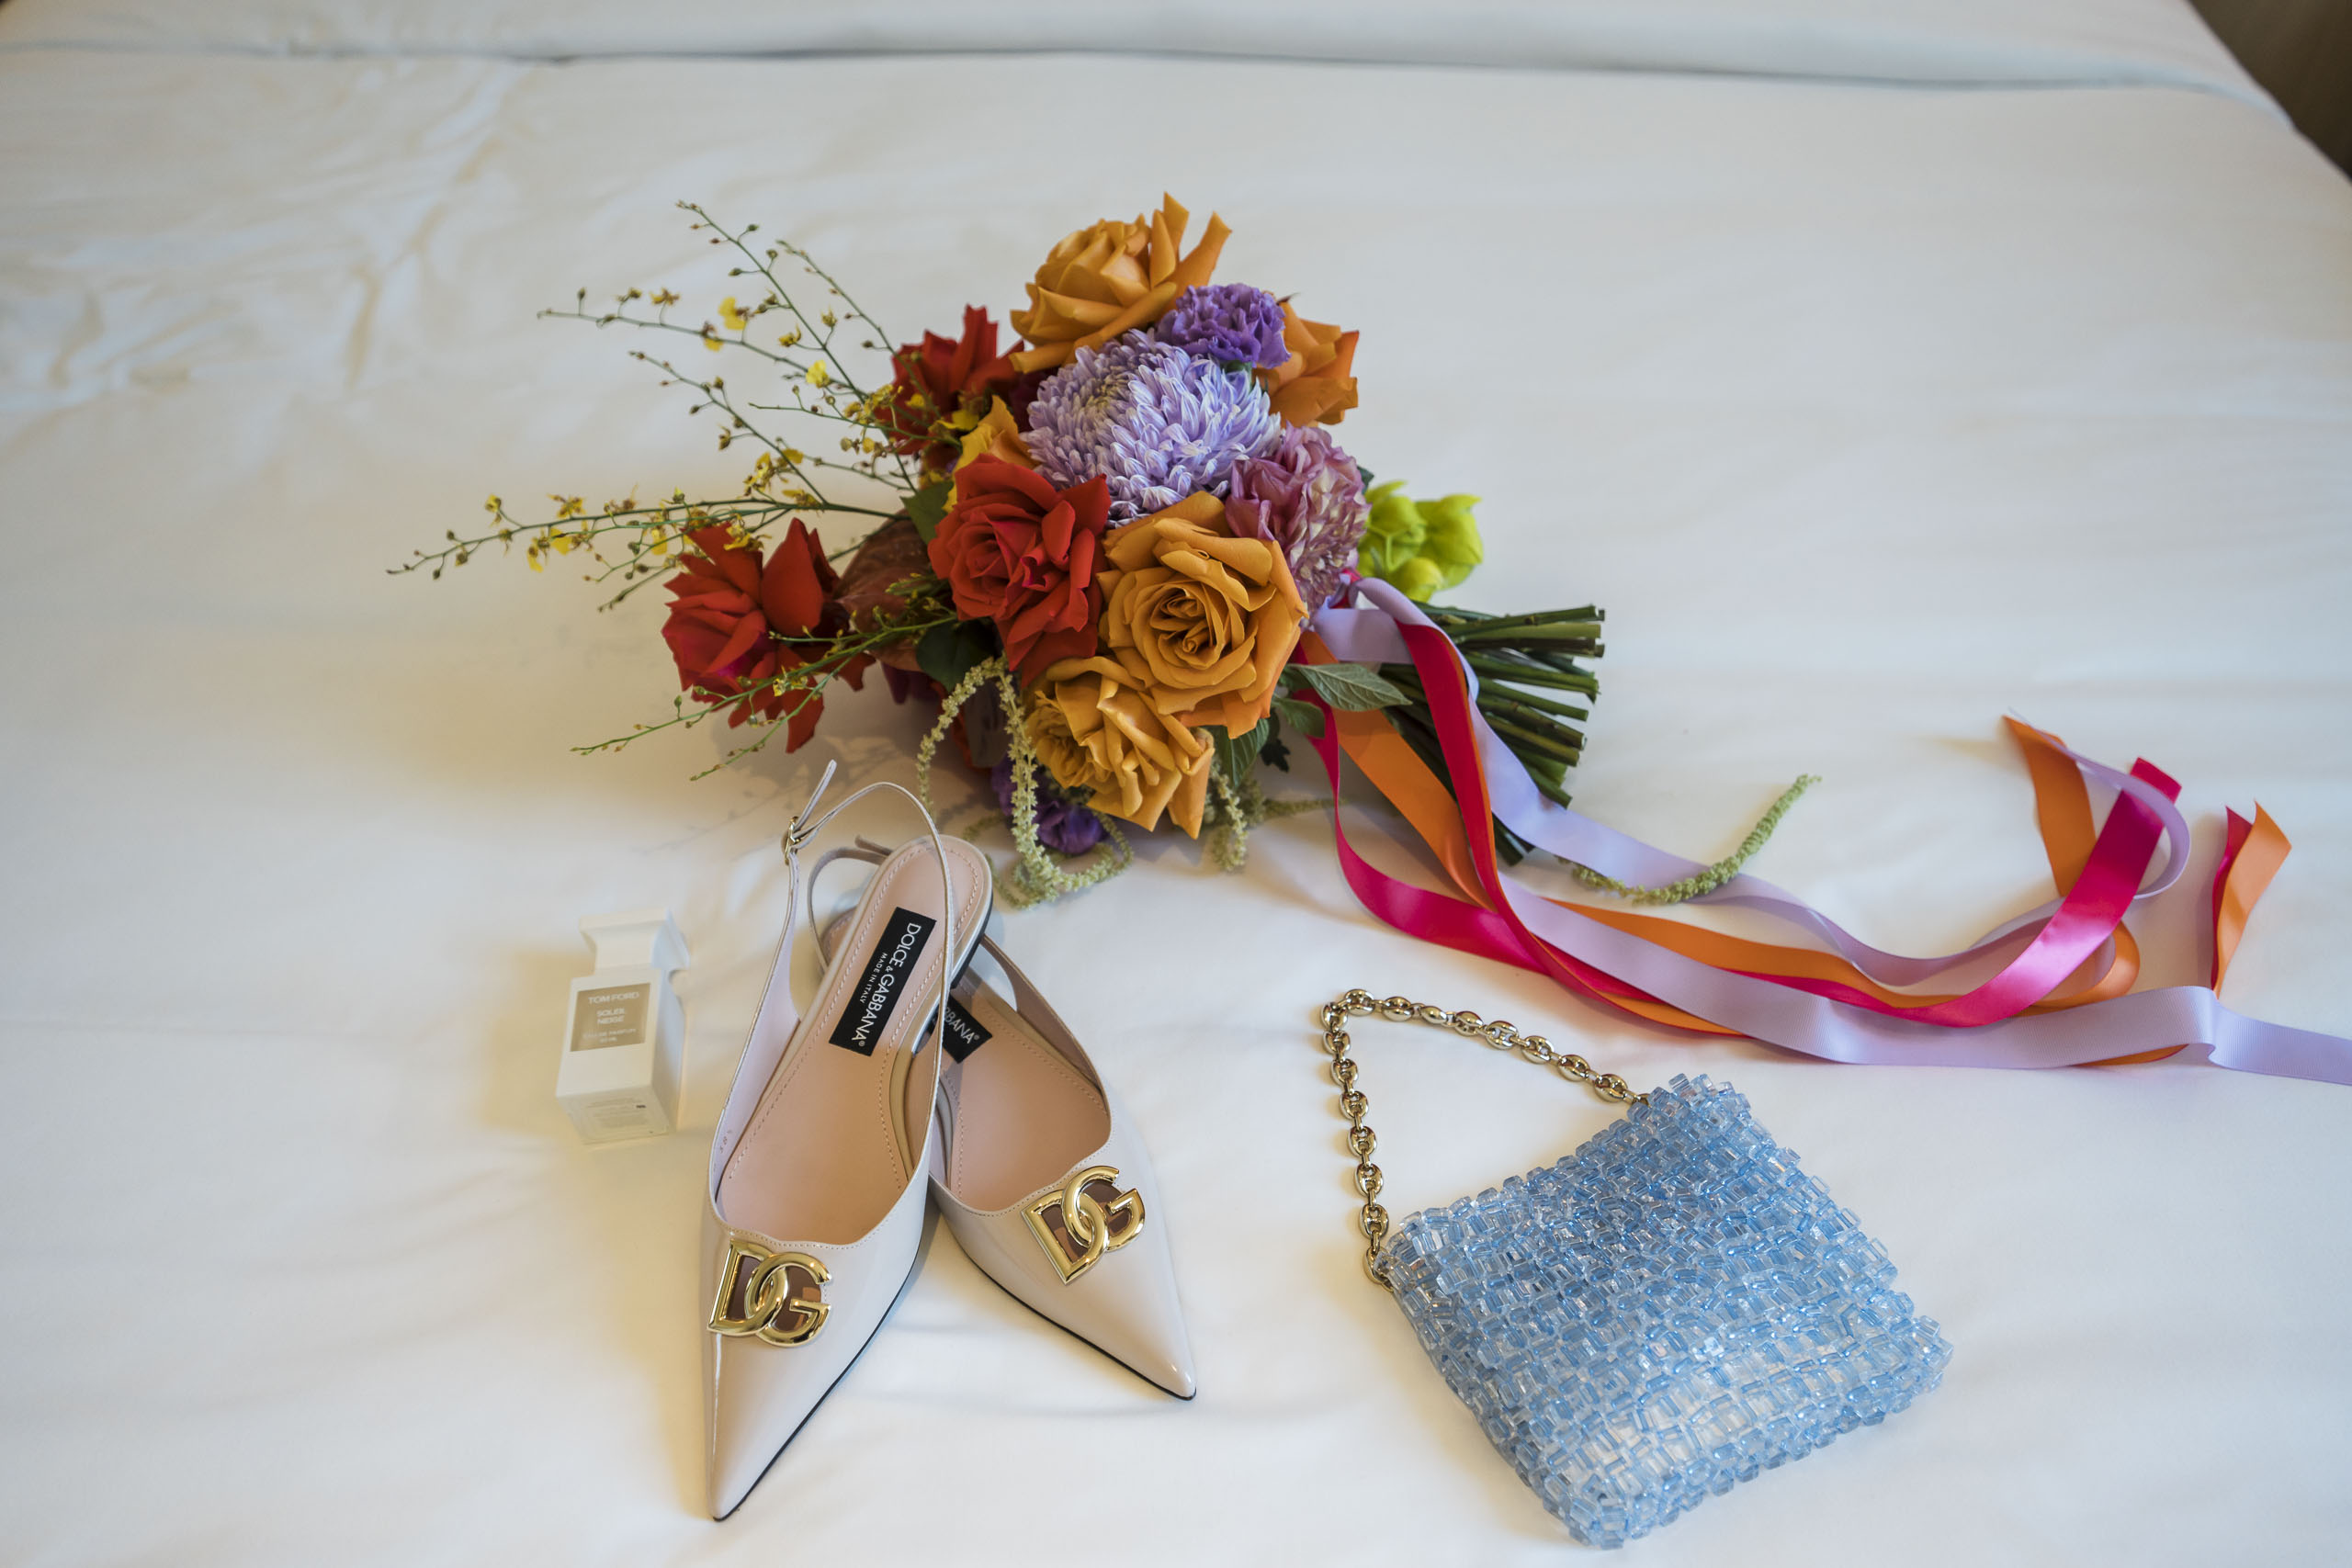 Bridal details, shoes, perfume, bouquet